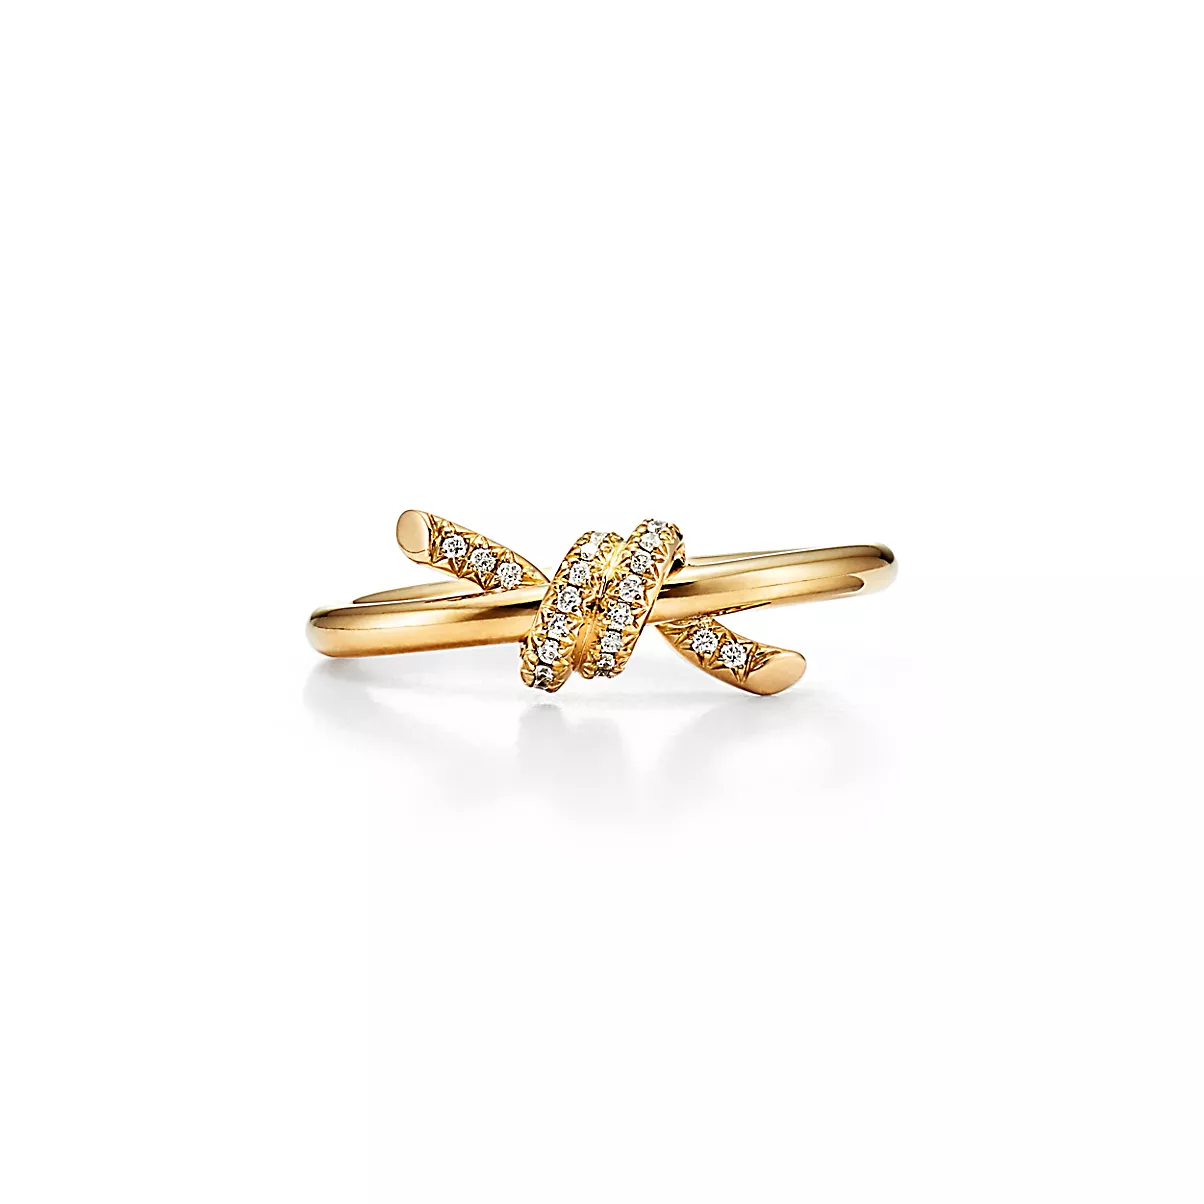 Tiffany Knot Ring 18K 옐로우 골드 다이아몬드